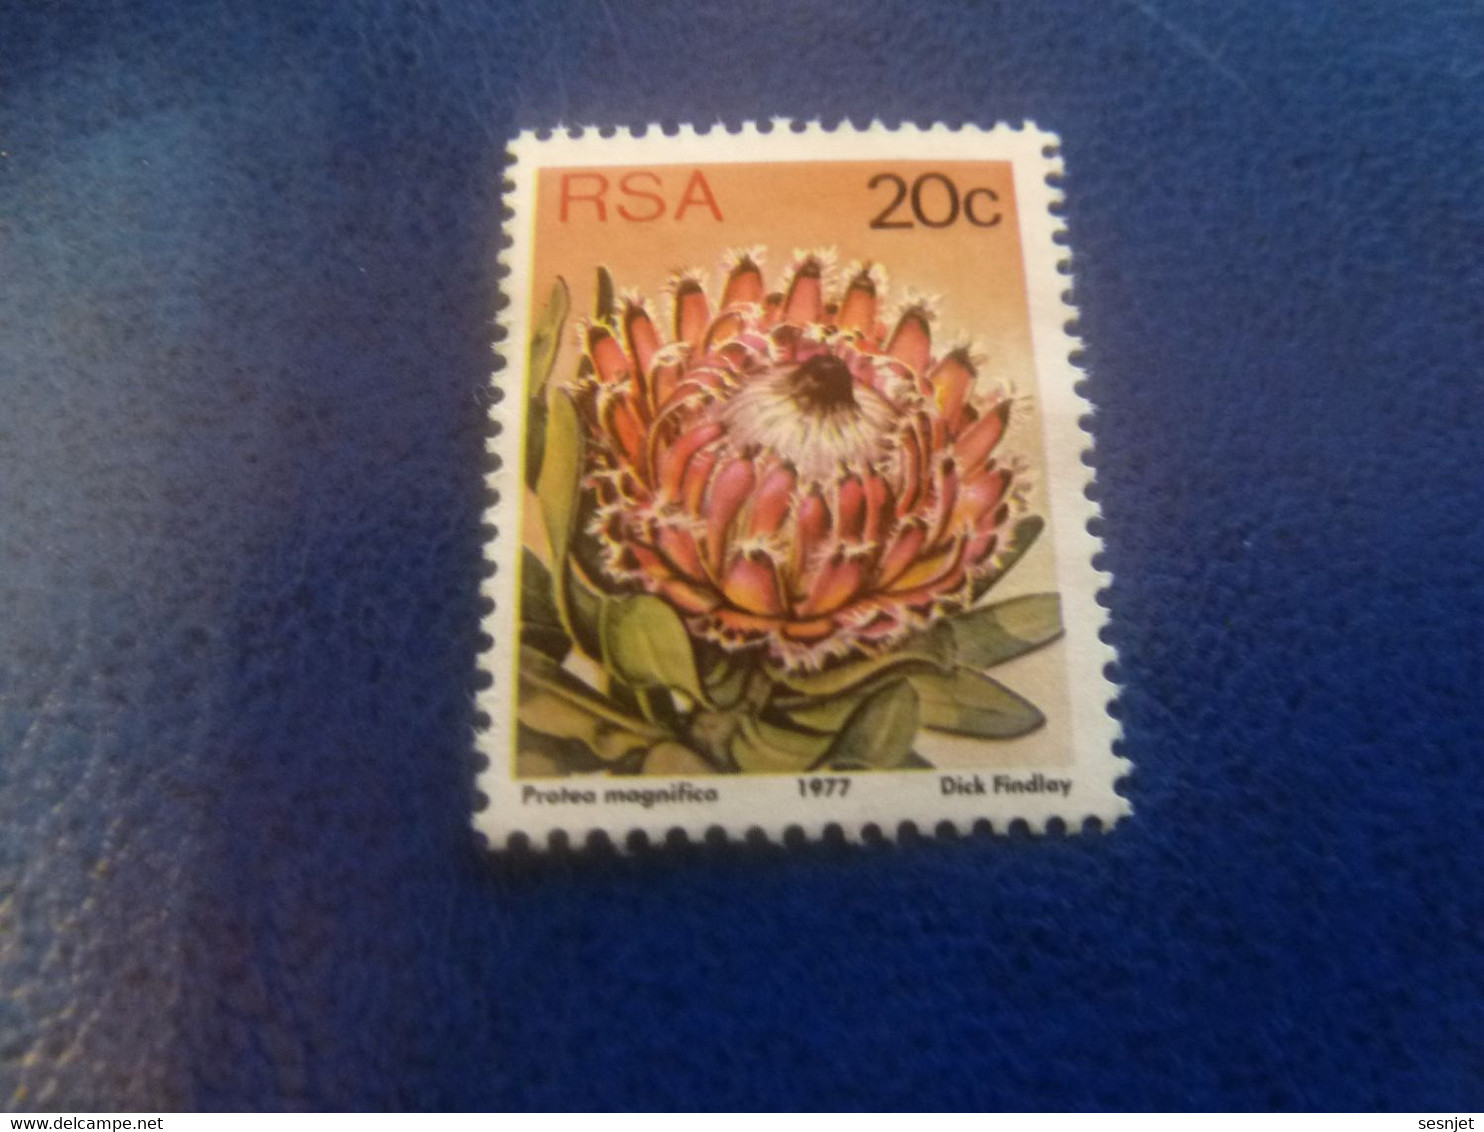 Rsa - Protea Punctata - Dick Findlay - 20 C. - Multicolore - Non Oblitéré - Année 1977 - - Oblitérés